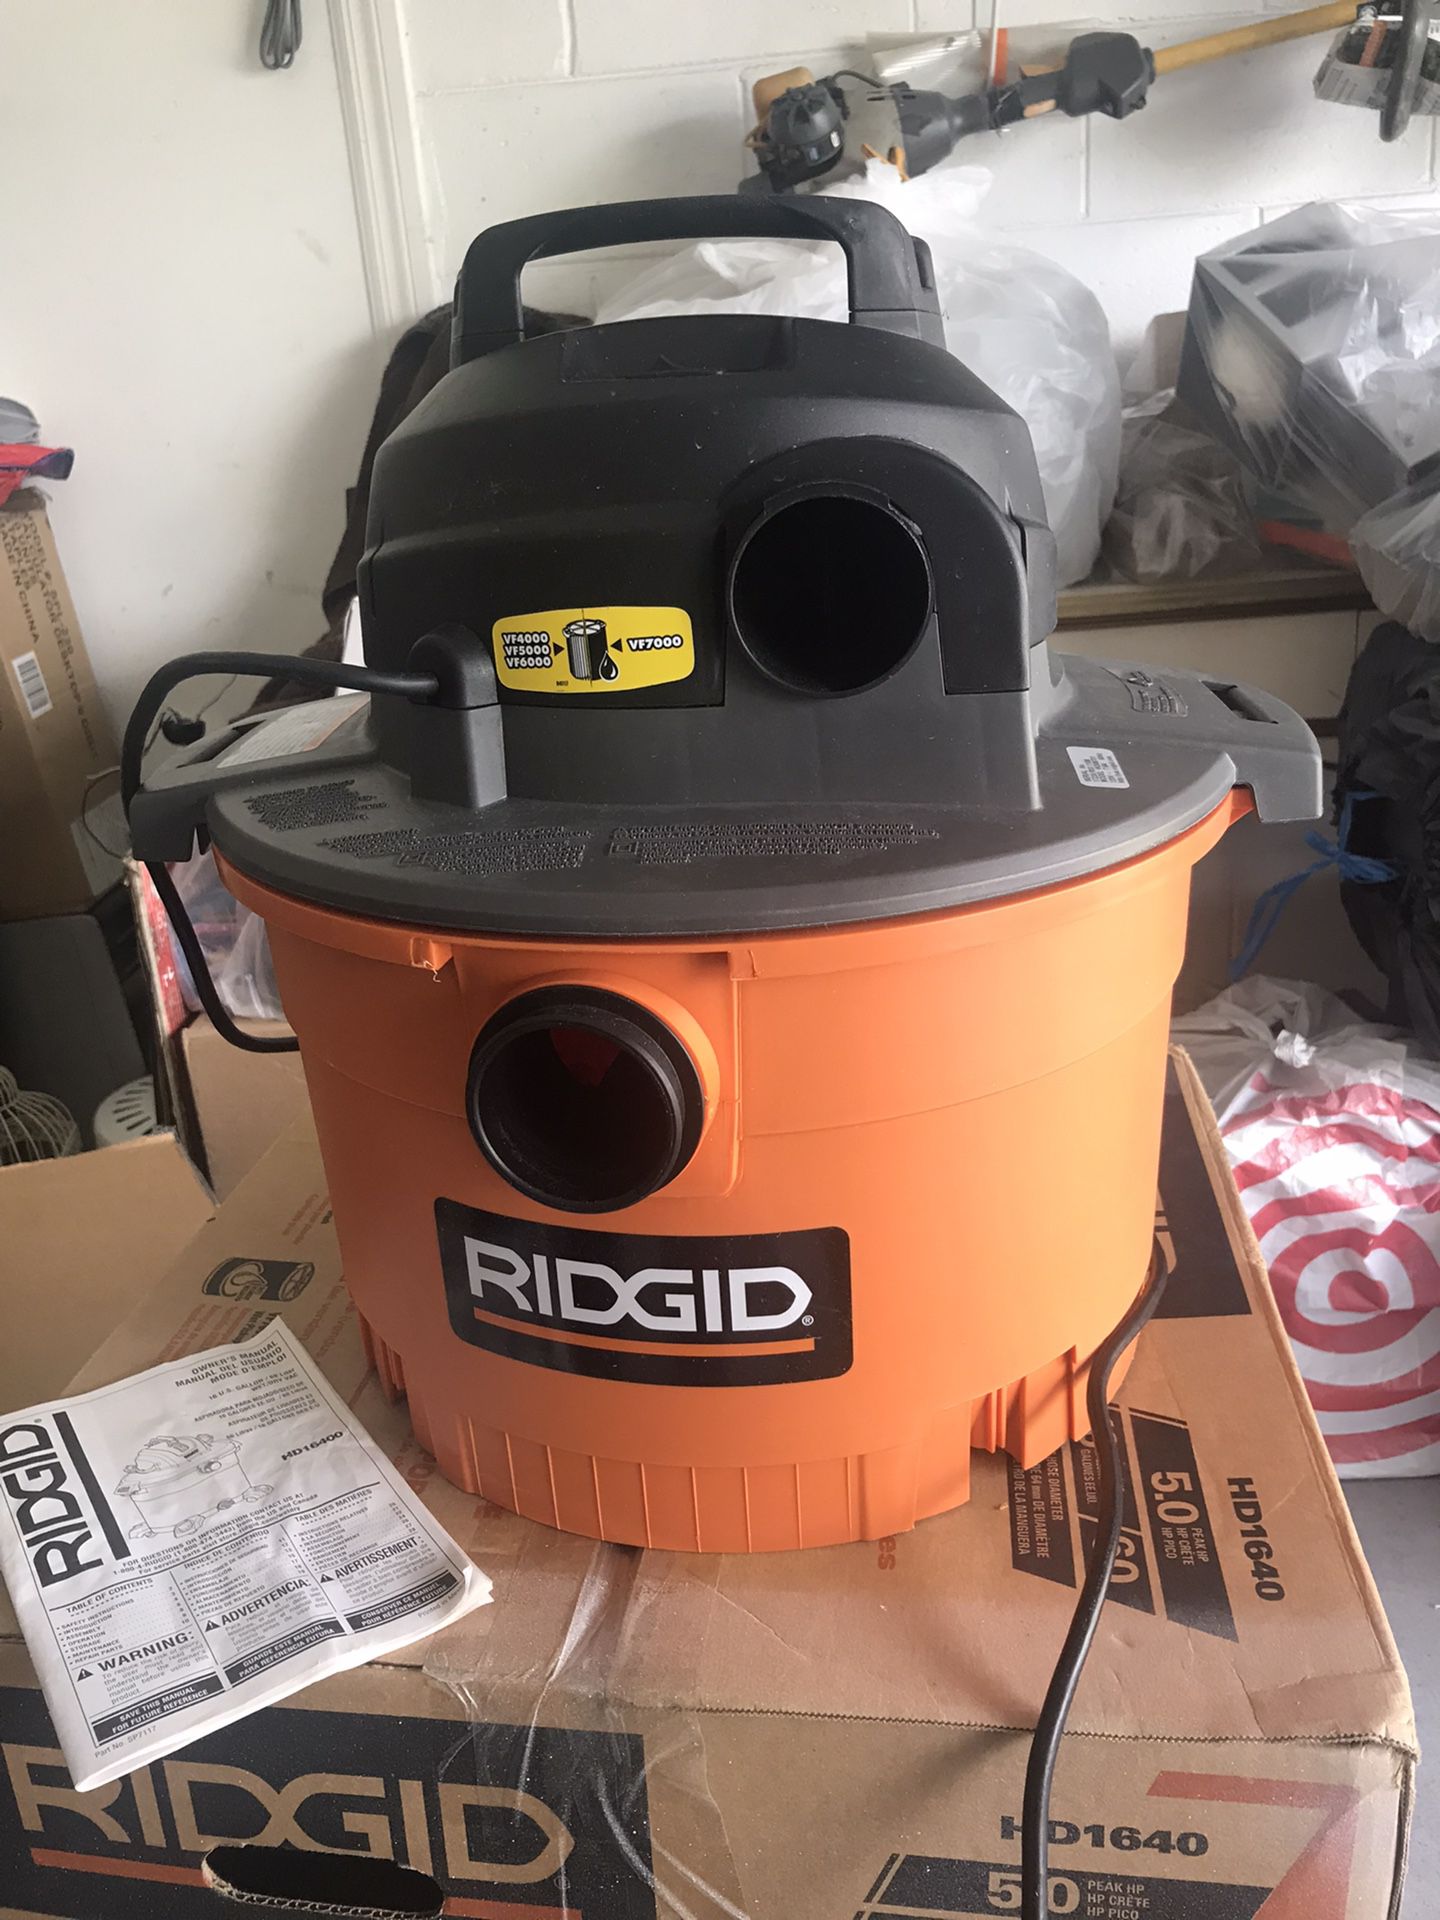 Ridgid Dry Vacuum 5 Gallon